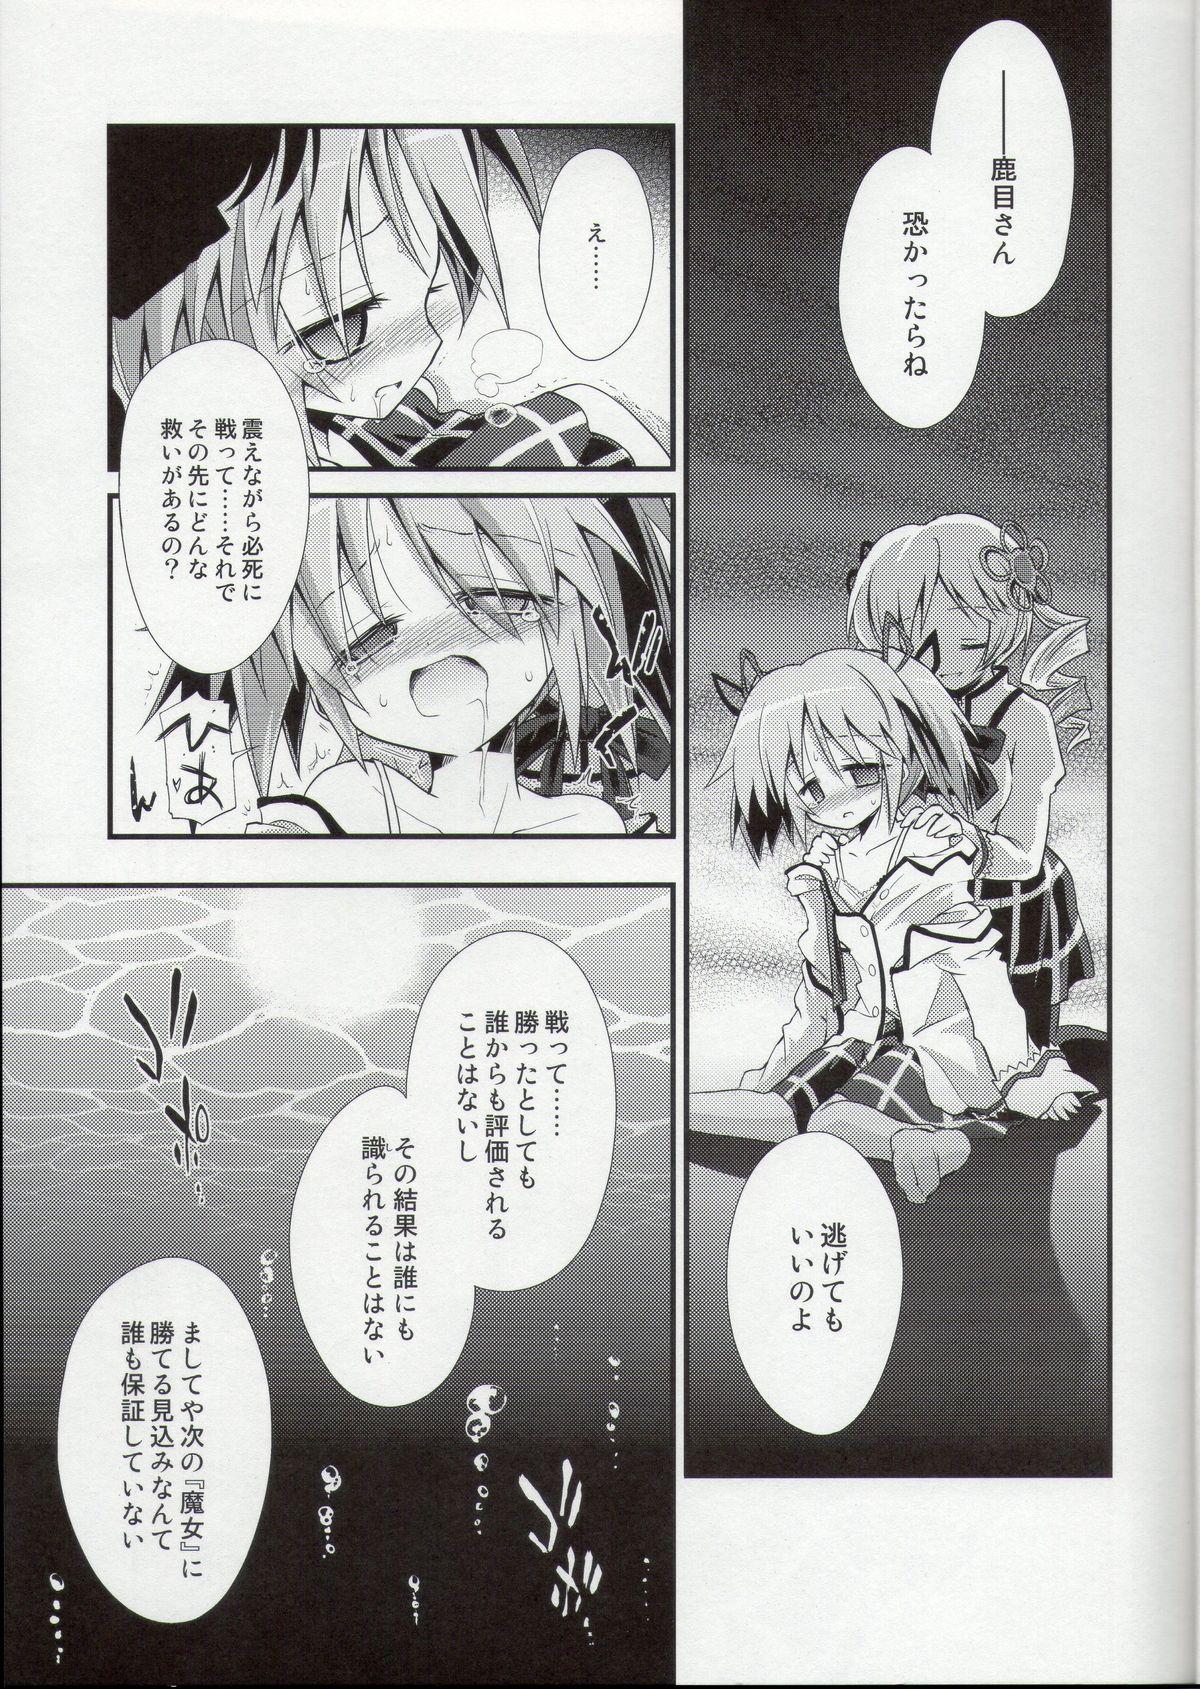 Reversecowgirl Doro no Naka Yume no Soko - Puella magi madoka magica Doll - Page 9